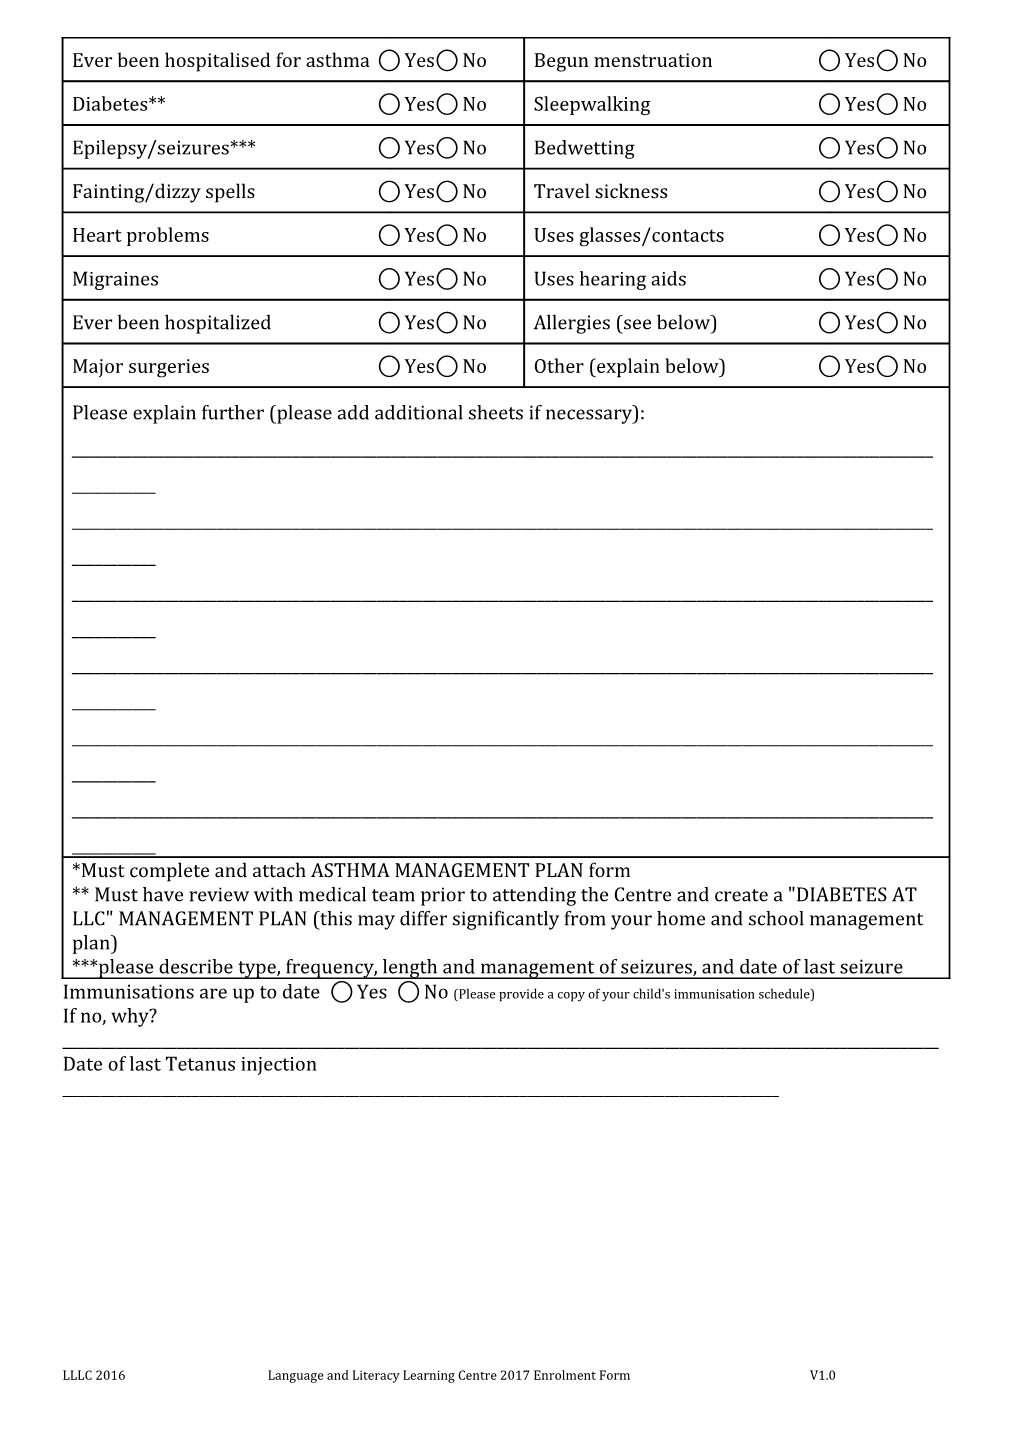 LLLC Enrolment Form, 2017